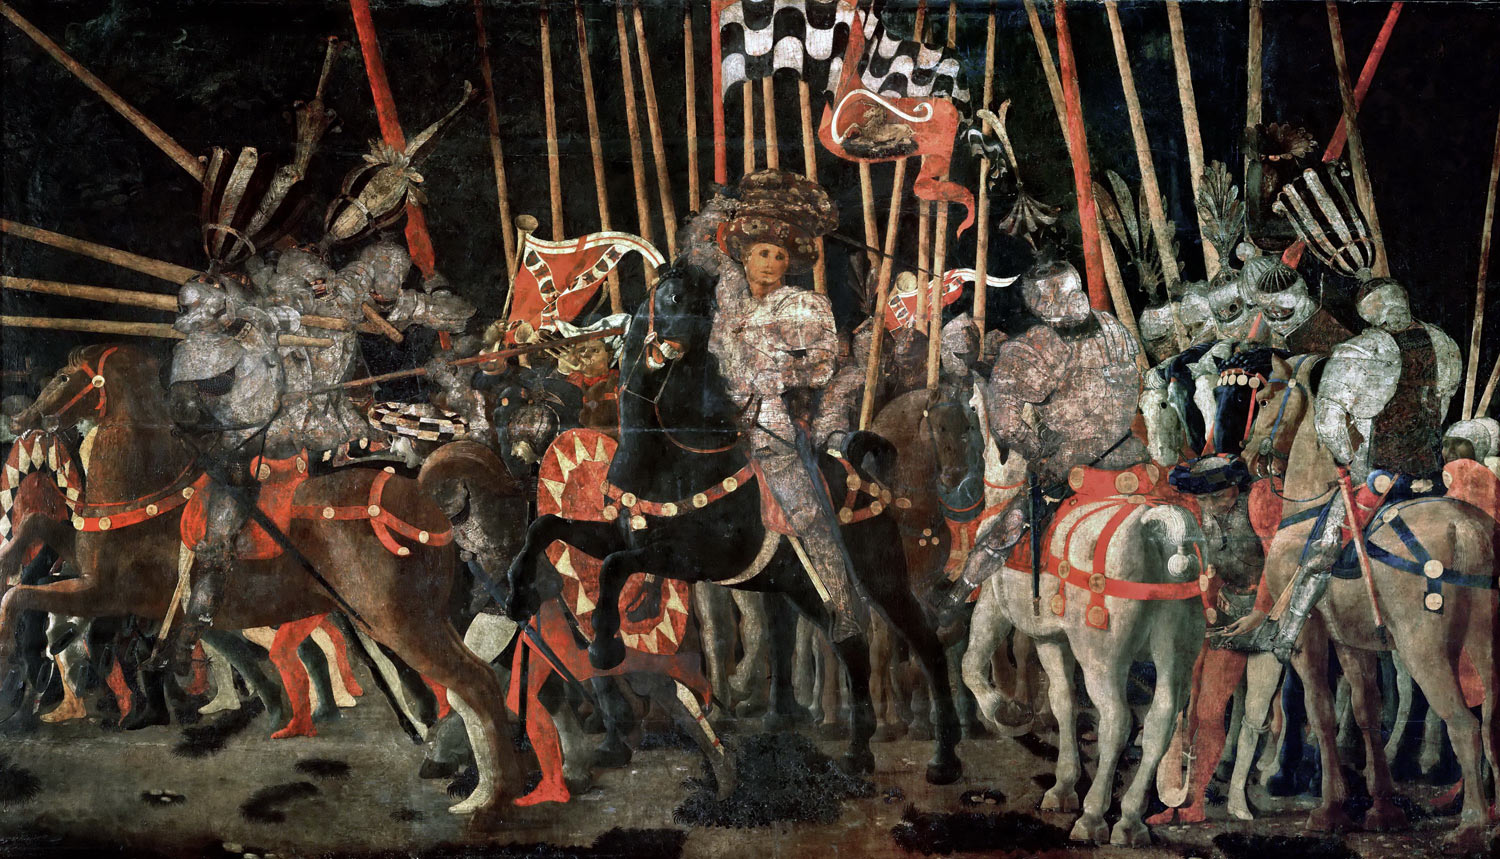 Paolo Uccello, La Battaglia di San Romano, L’intervento di Micheletto da Cotignola (1438- 1440 circa; tempera su tavola, 182 x 317 cm; Parigi, Louvre)
